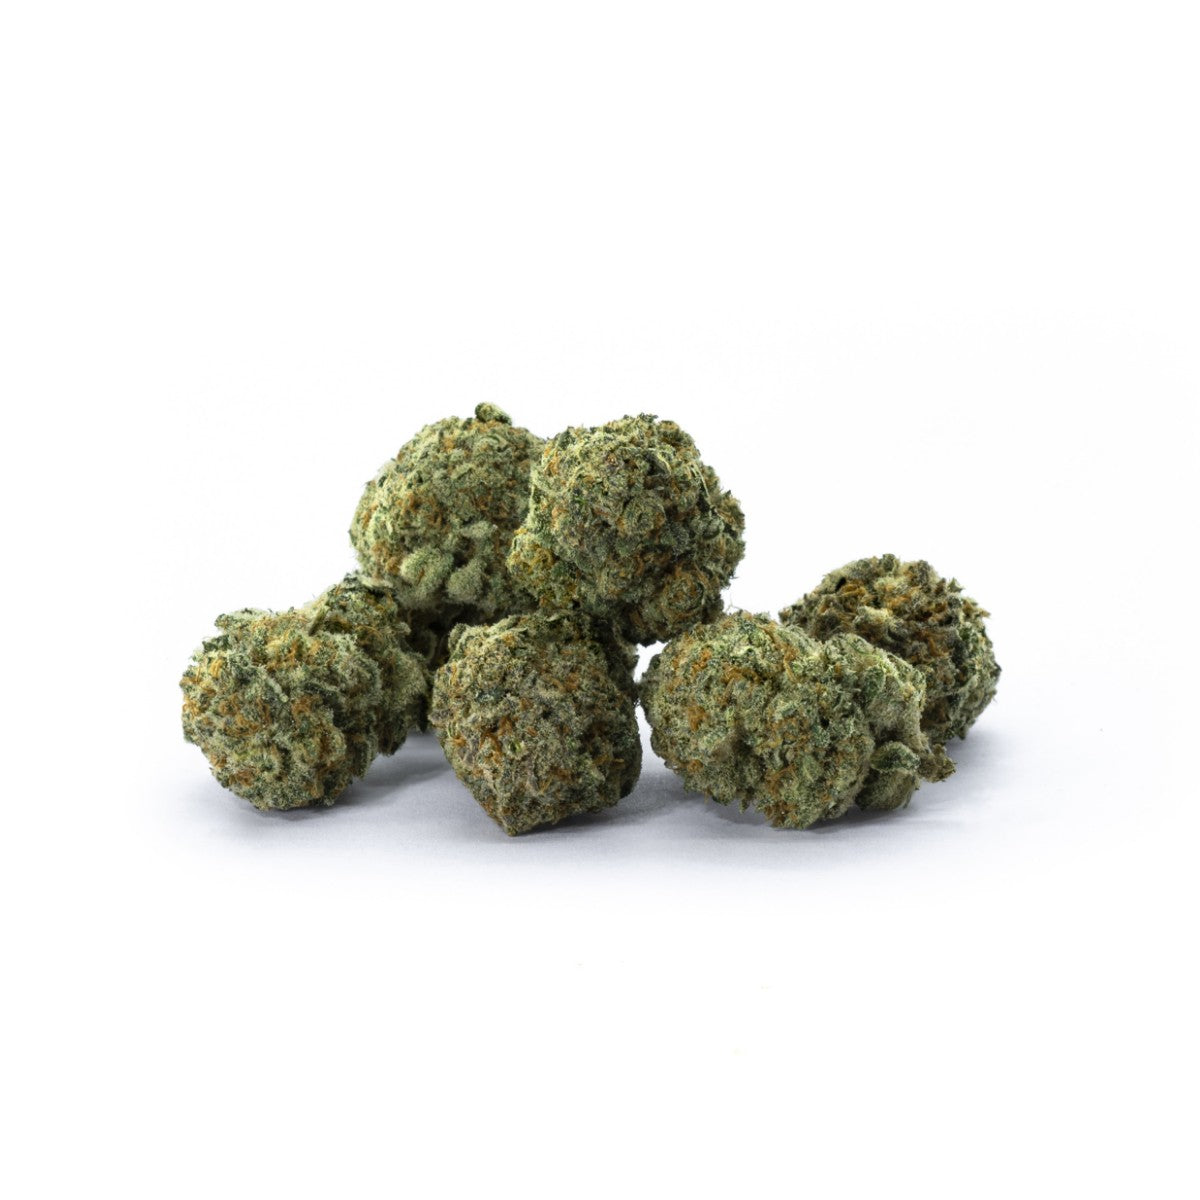 cannabis light légal à petit prix, fleurs de CBD aux effets puissants pour améliorer la qualité du sommeil. Odacity de chez Maison Sativa à 50100 Cherbourg-en-cotentin. Produits contenant un taux de THC inférieur à 0.3%